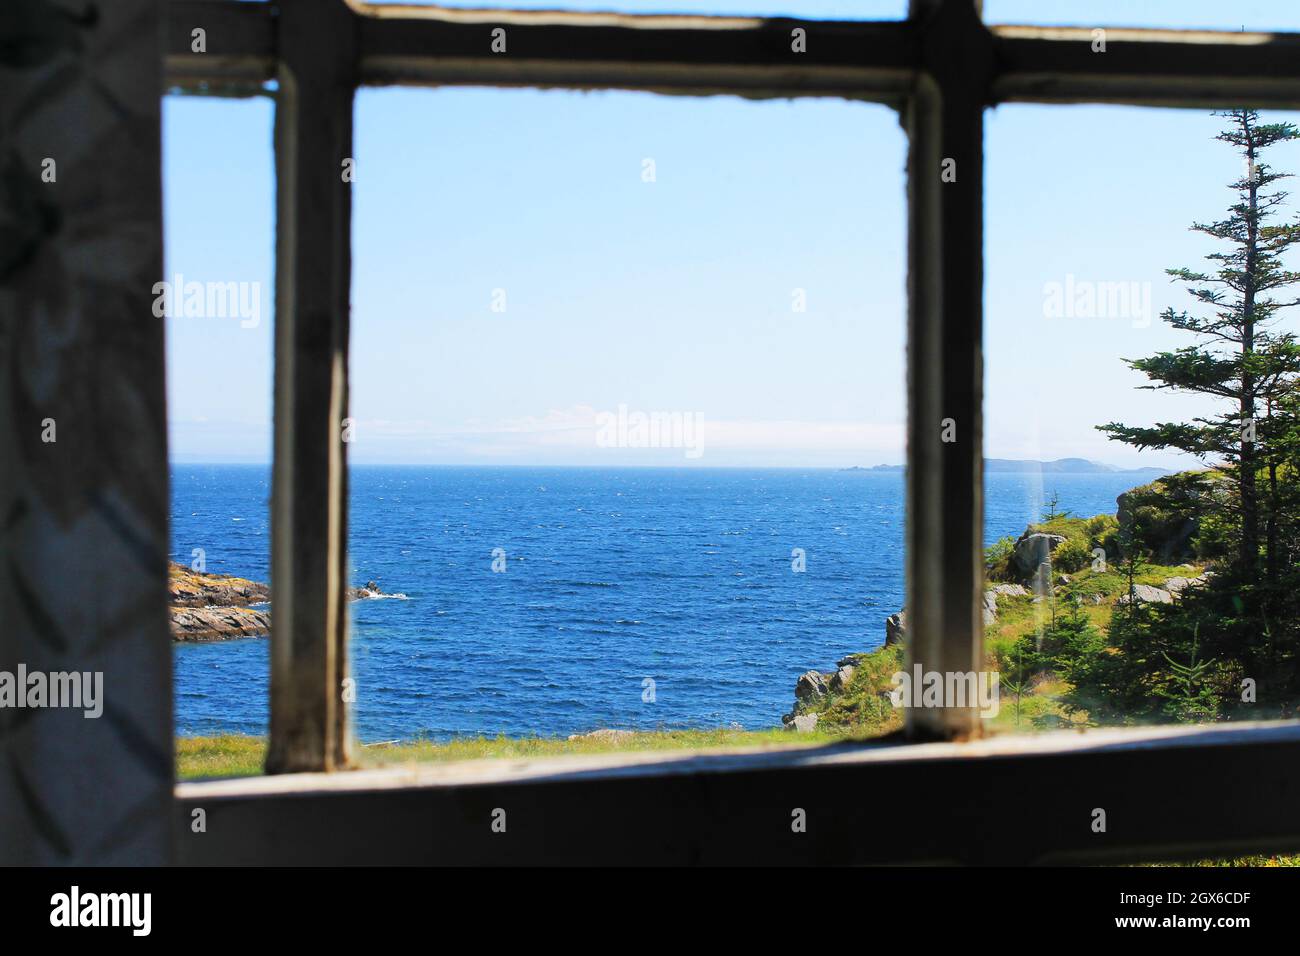 Vista attraverso una finestra della costa e guardando oltre, fuori sopra l'Oceano Atlantico fino all'orizzonte. Foto Stock